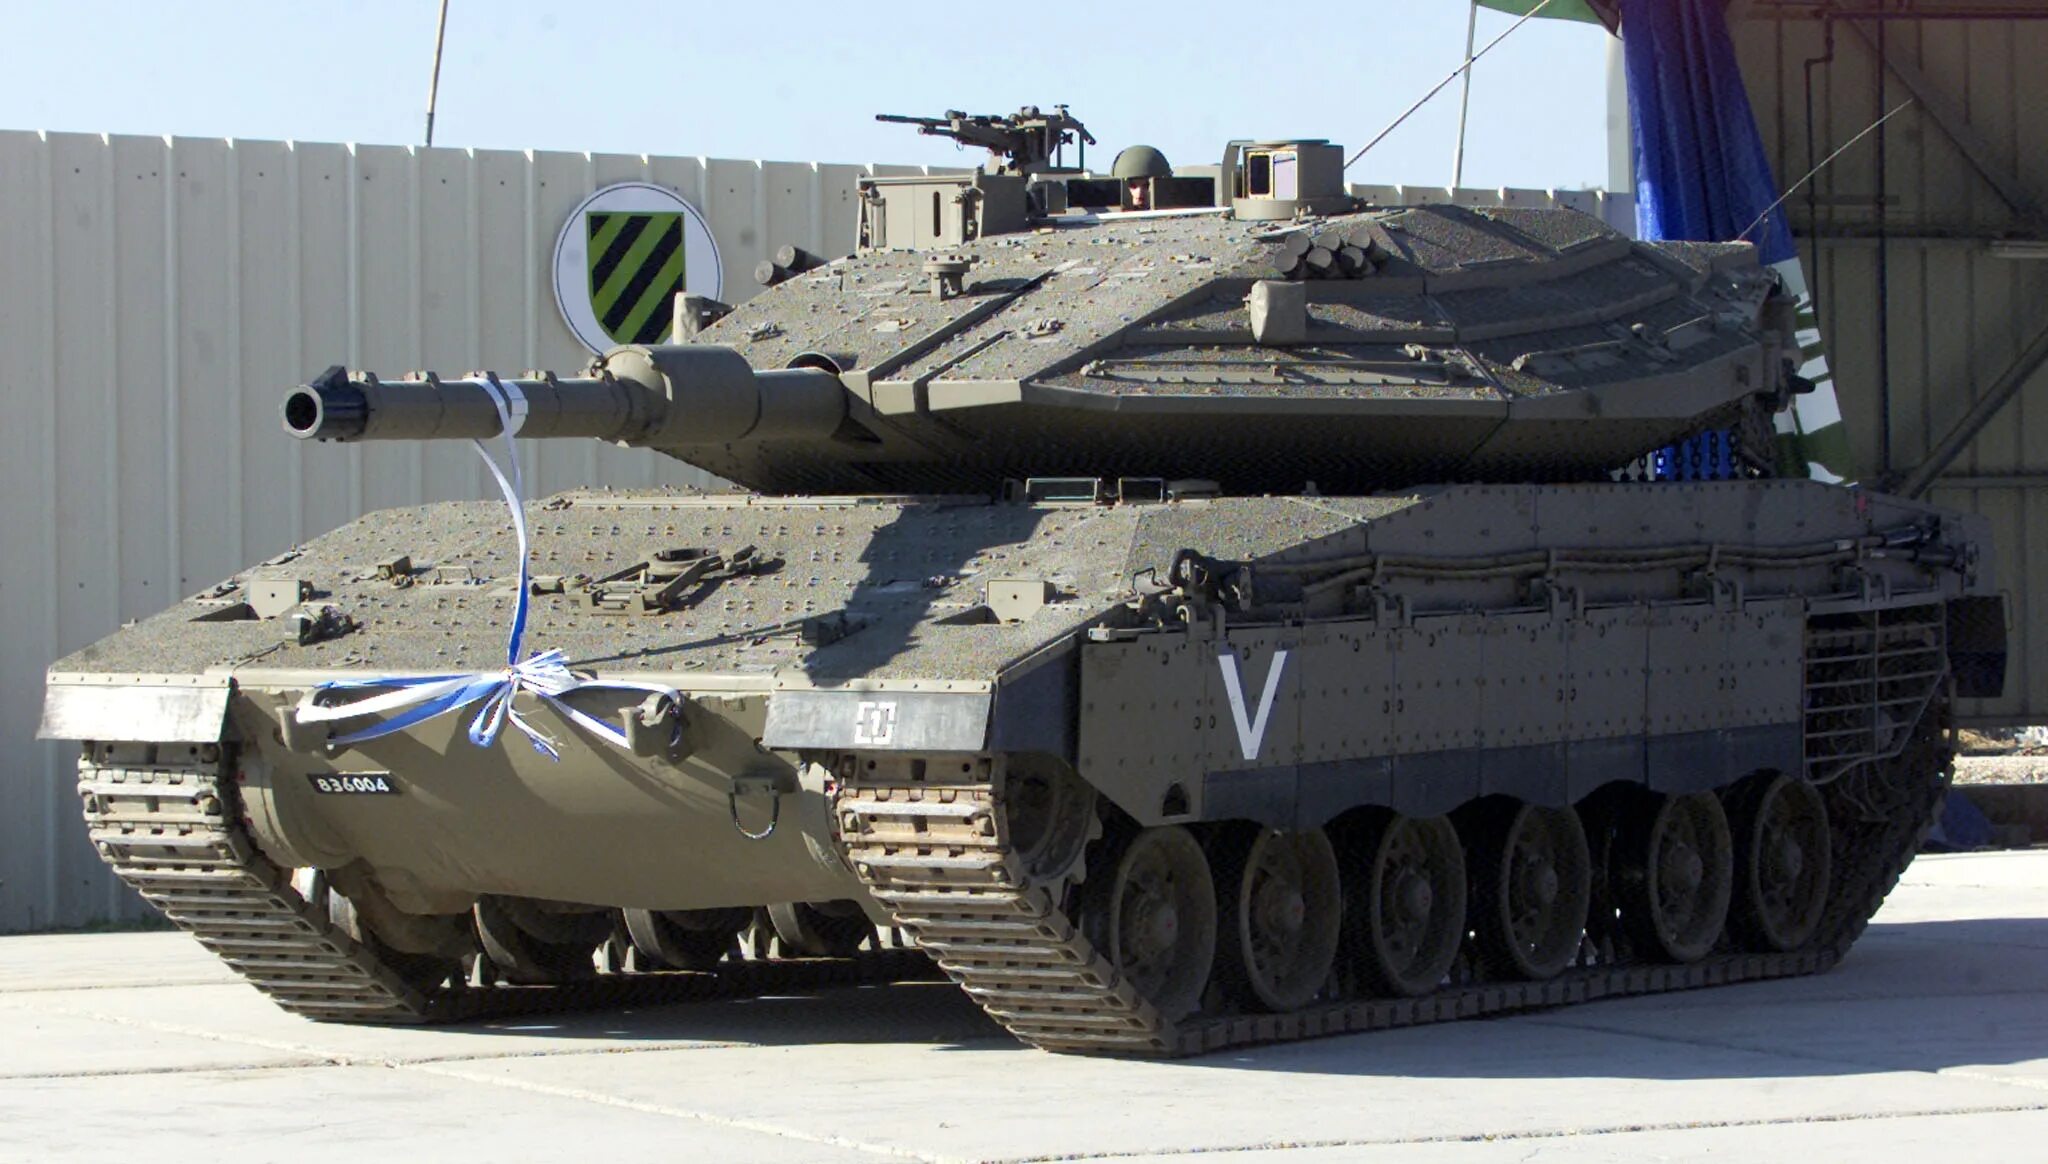 Merkava mk4. Меркава 5. Меркава-4 Барак. Танк Меркава 2. Самый сильный танк в мире танков